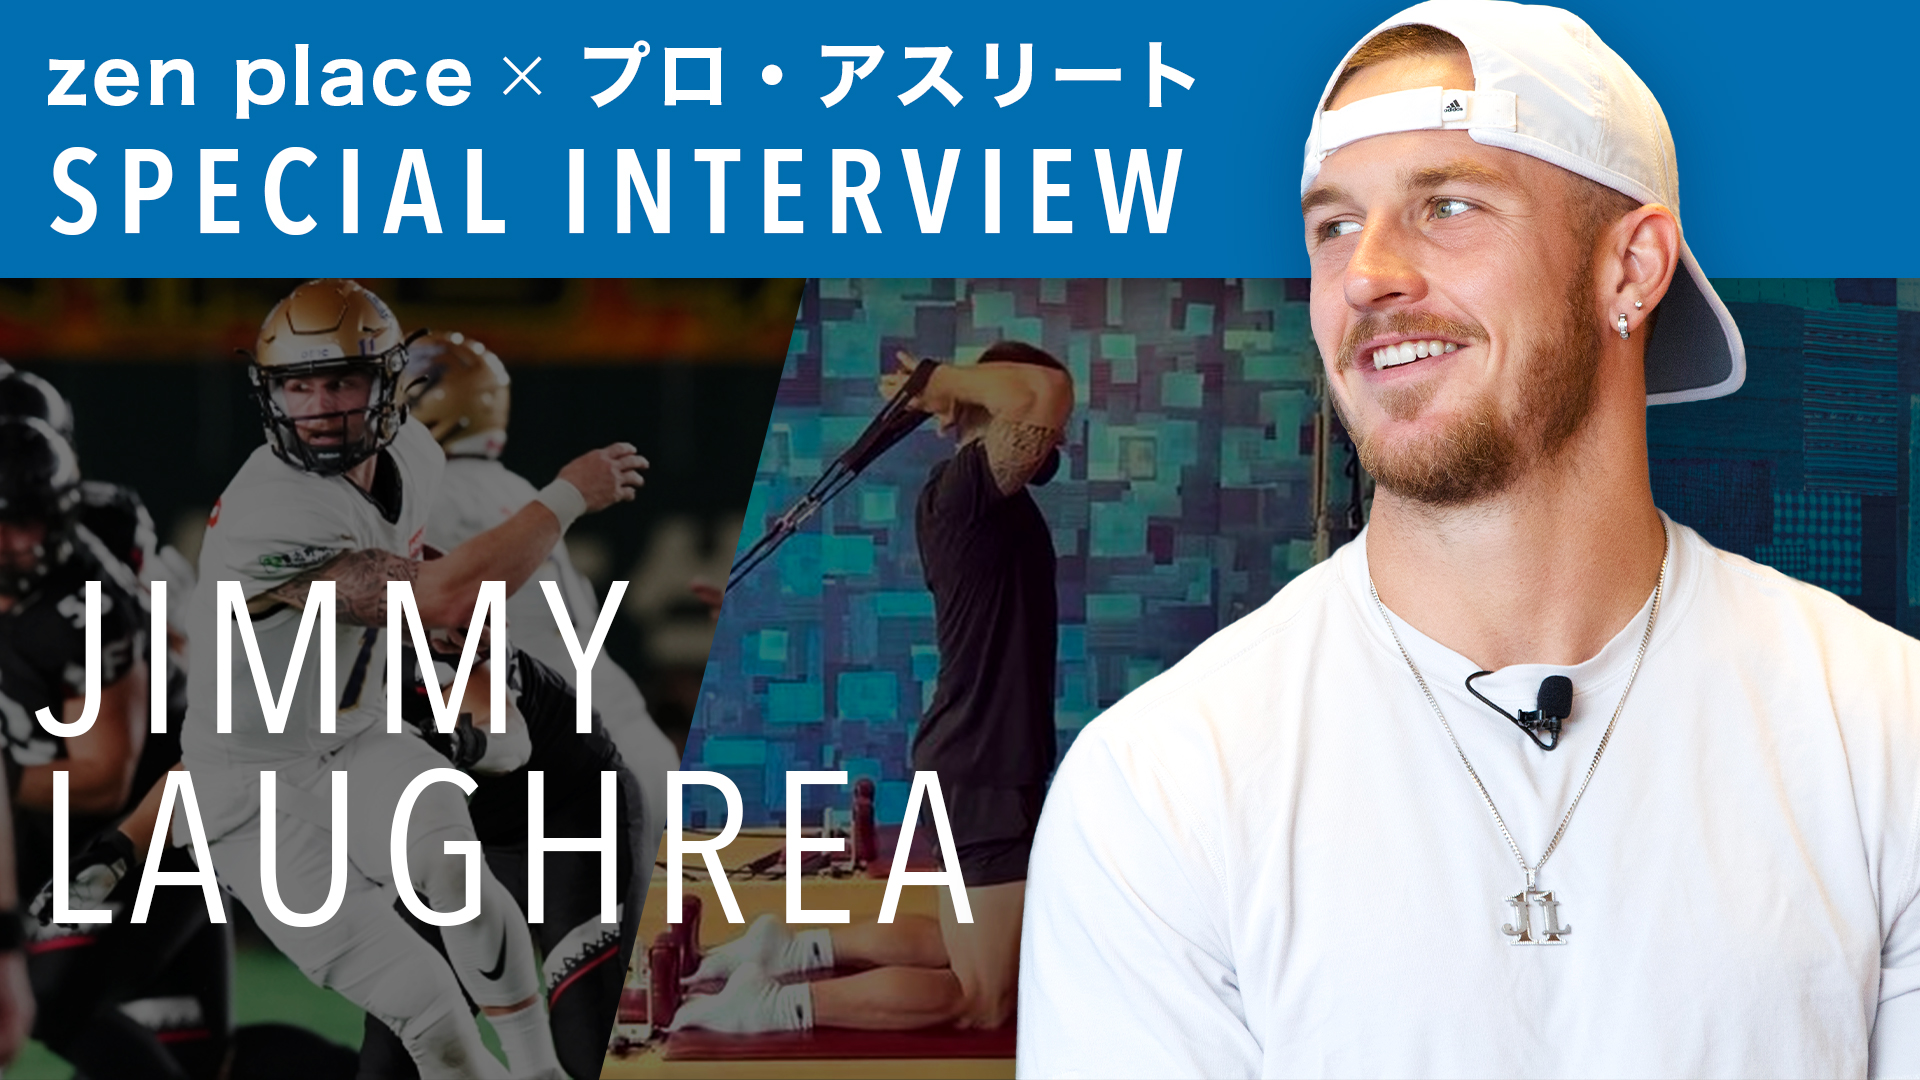 【zen place x アスリート Interview】プロ・アメフト選手ジミー・ロックレイさんが語る「ピラティスで楽しむ自分の変化」